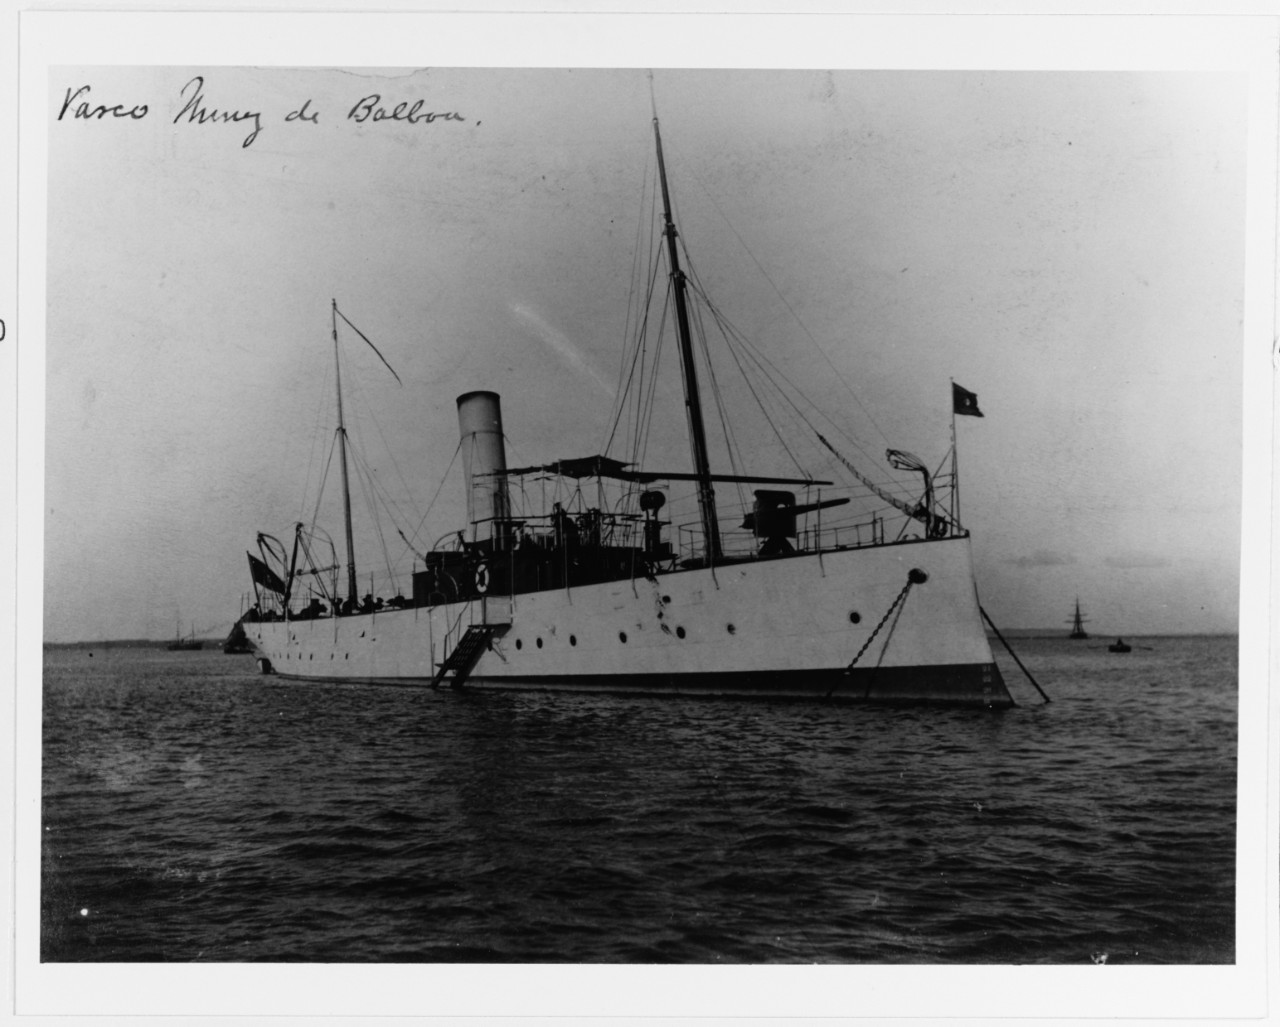 VASCO NUNEZ DE BALBOA (Spanish gunboat, 1895-1926)